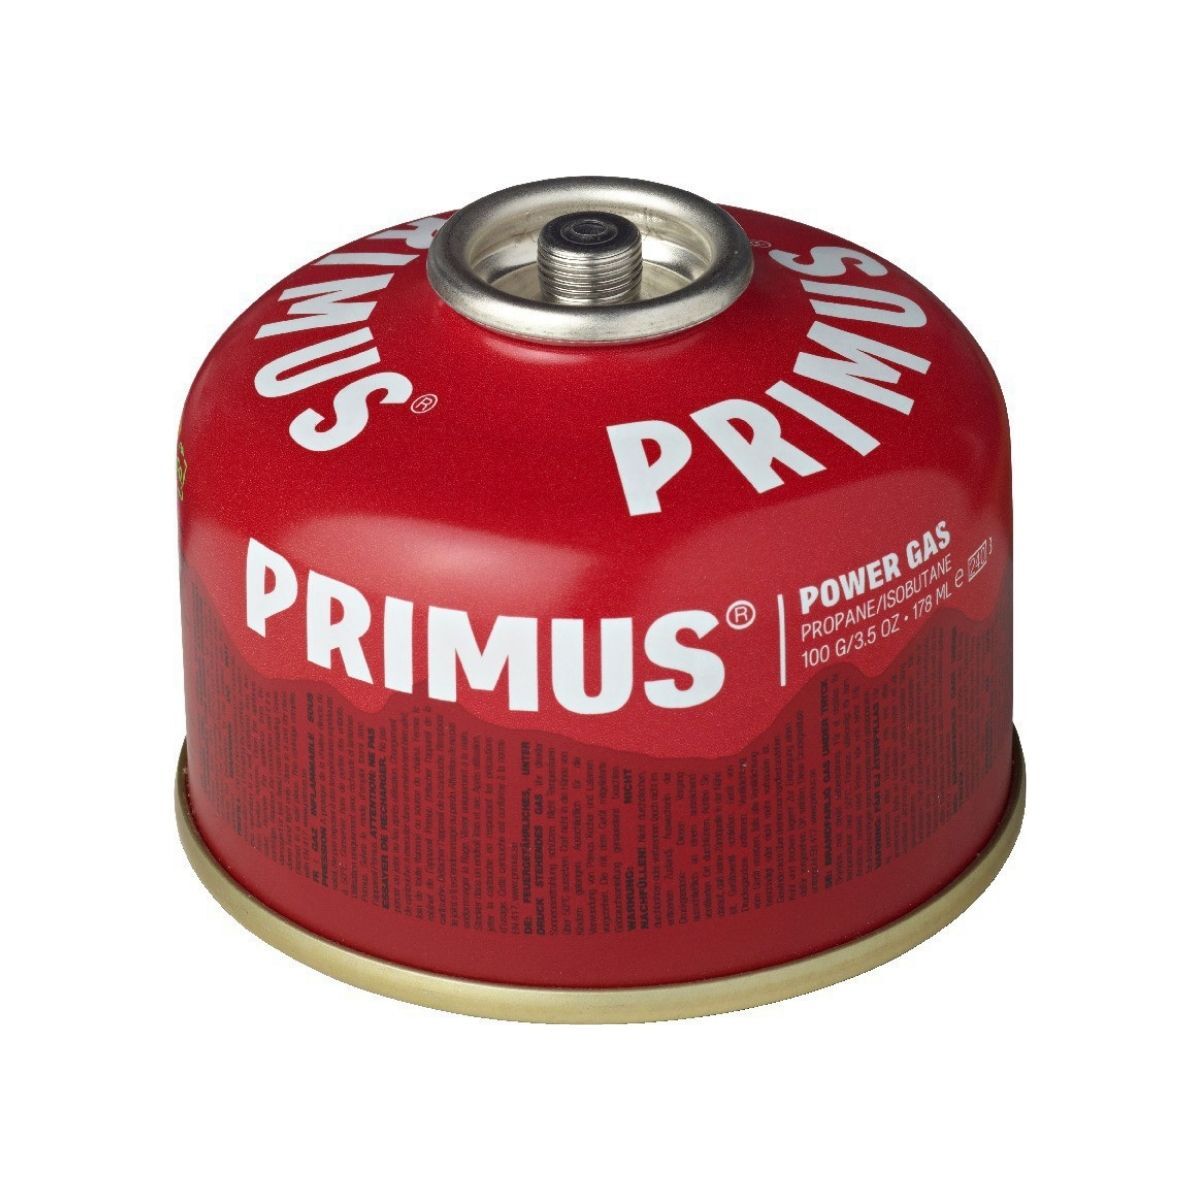 Primus Power Gas 100 g L1 - Gaskartusche